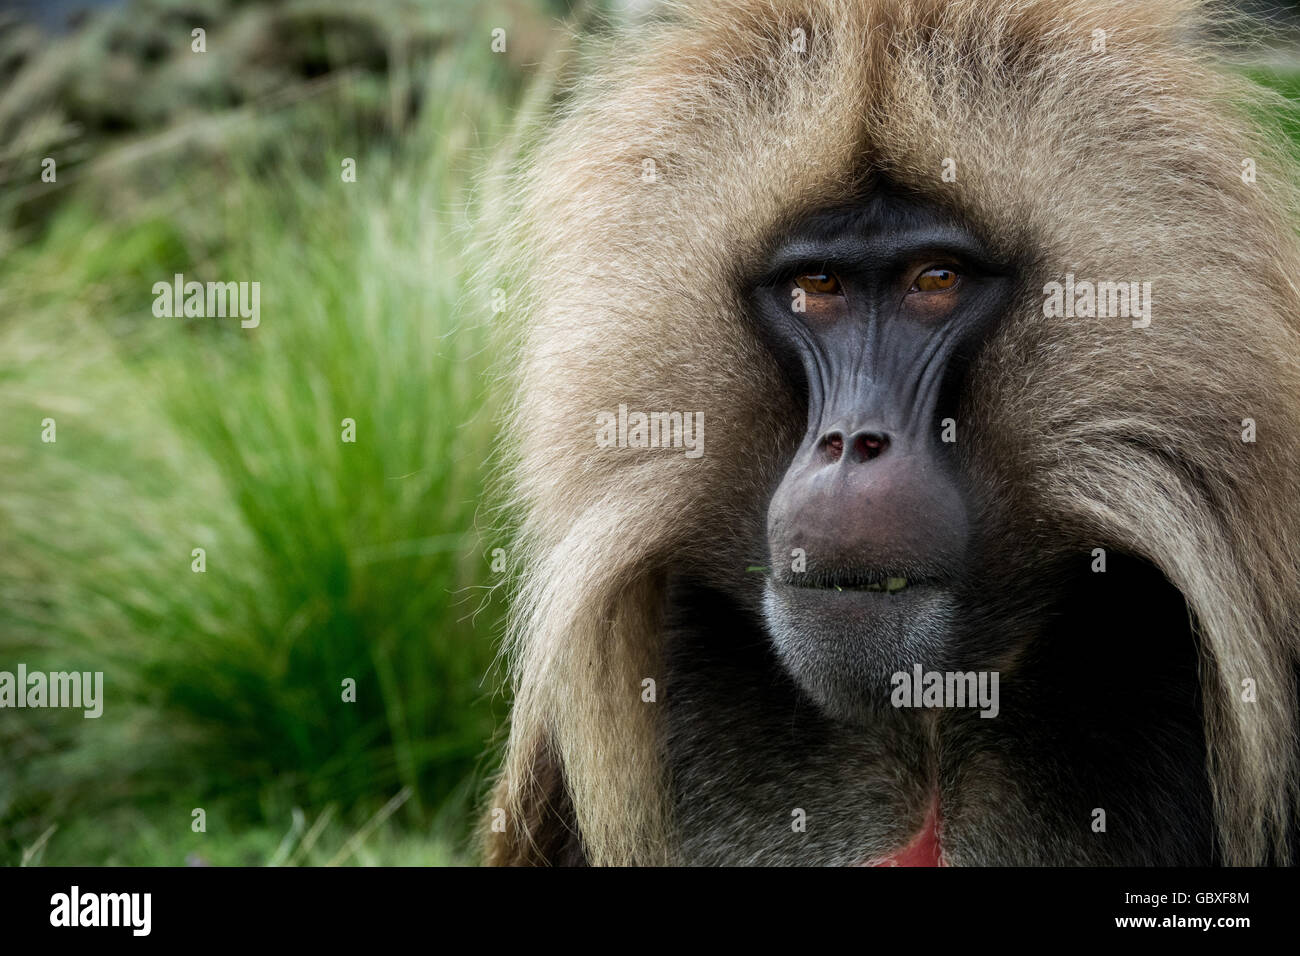 Eine Nahaufnahme einer Gelada, einem Primaten, der endemisch in der Simien-Gebirgsregion Äthiopiens ist Stockfoto